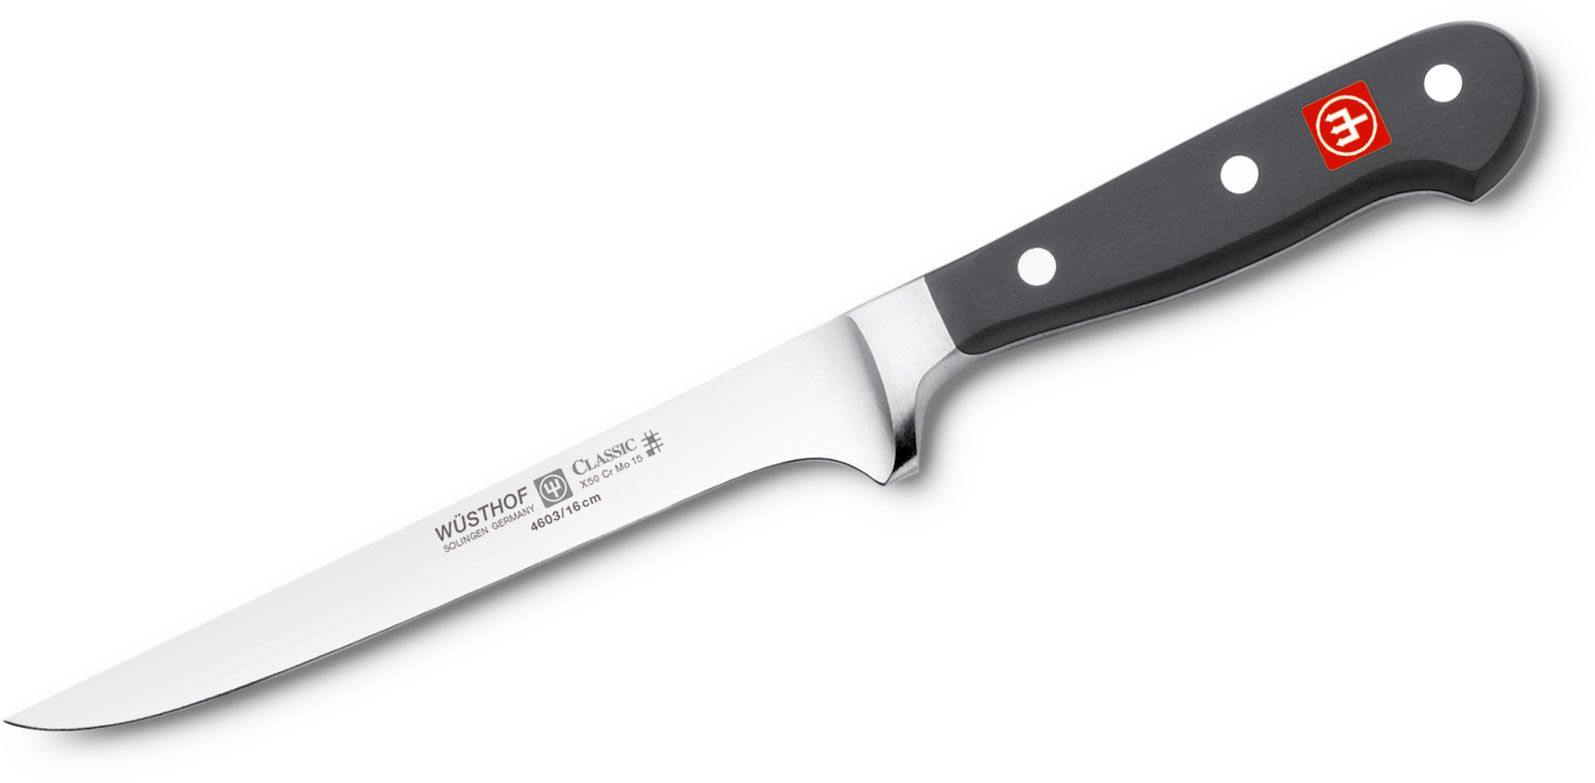 Wusthof Classic 6" Flexible Boning Knife - KnifeCenter - 1040101416